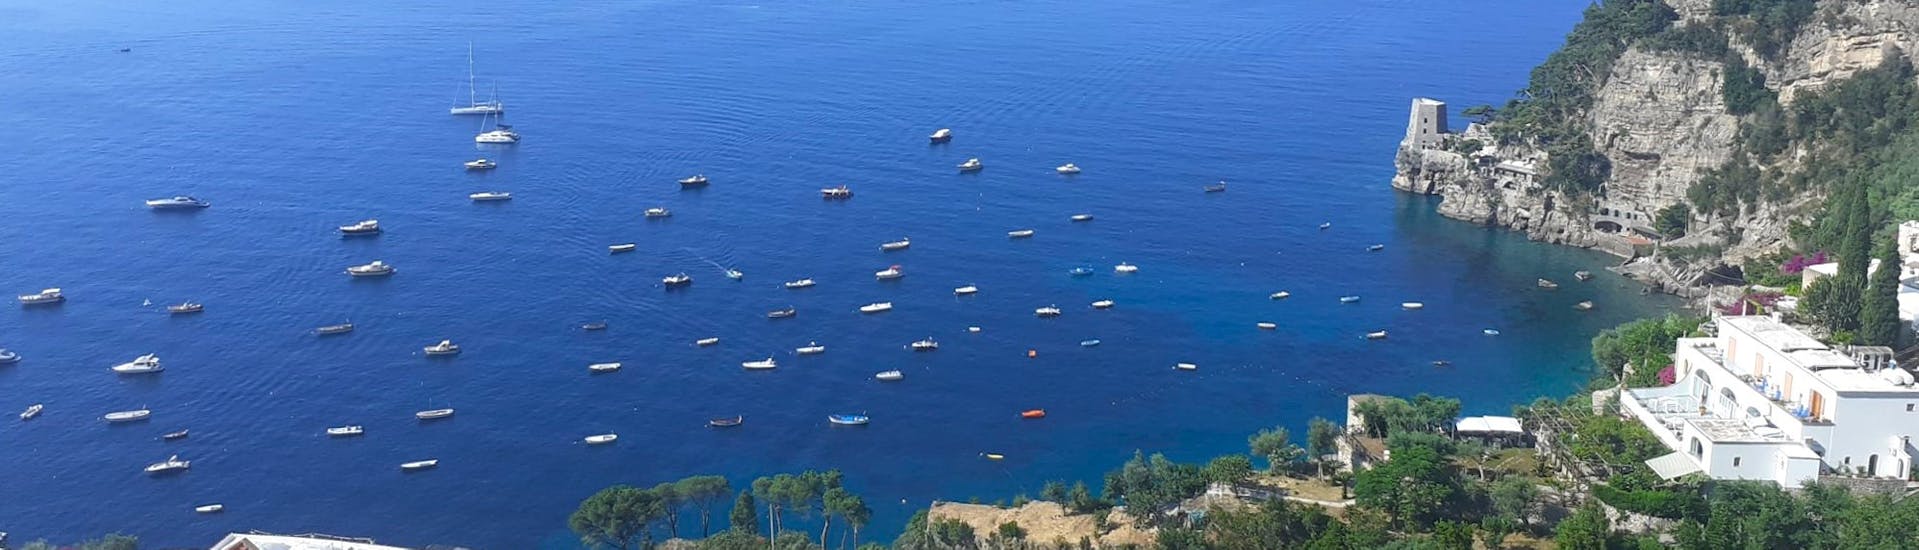 Vue de la côte amalfitaine depuis le ciel pendant la Balade privée en bateau sur la côte amalfitaine depuis Positano - Journée.